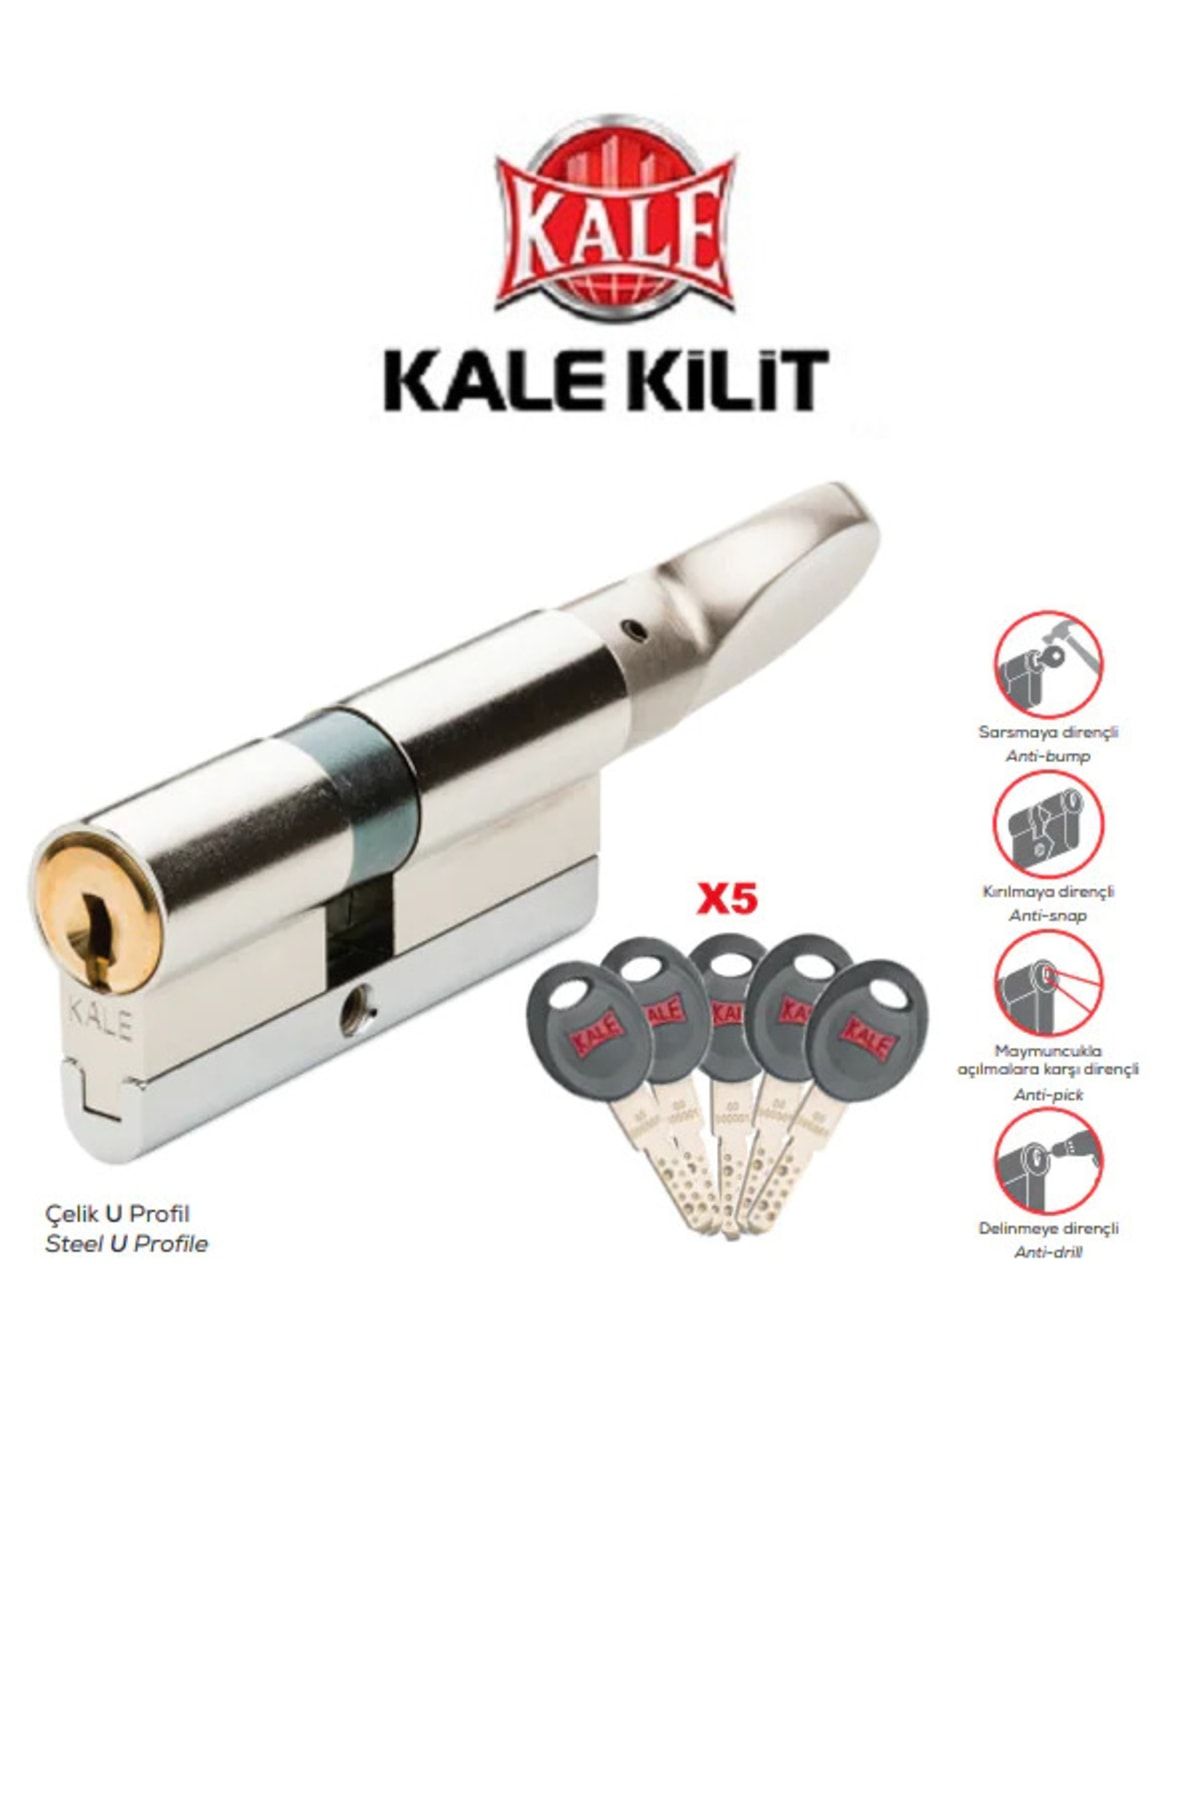 Kale Kilit 164 Cec M Tüpten Şifreli Mandallı Emniyet Kartlı Yüksek Güvenlikli 5 Anahtarlı 68mm Nikel